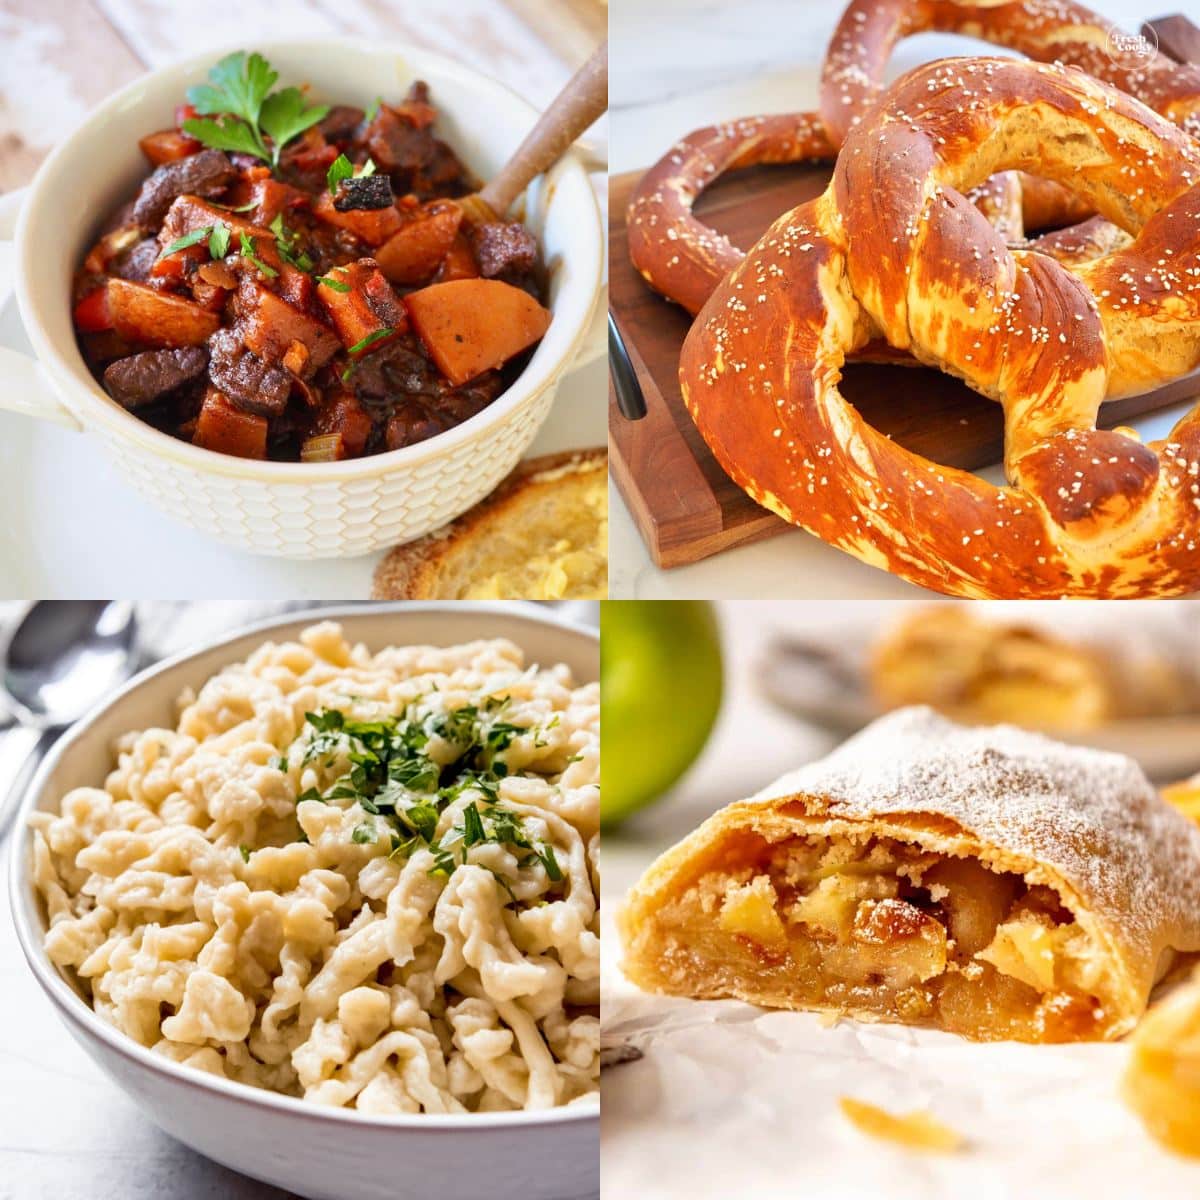 Oktoberfest food images for German goulash, Bavarian pretzels, spaetzle and apple strudel!